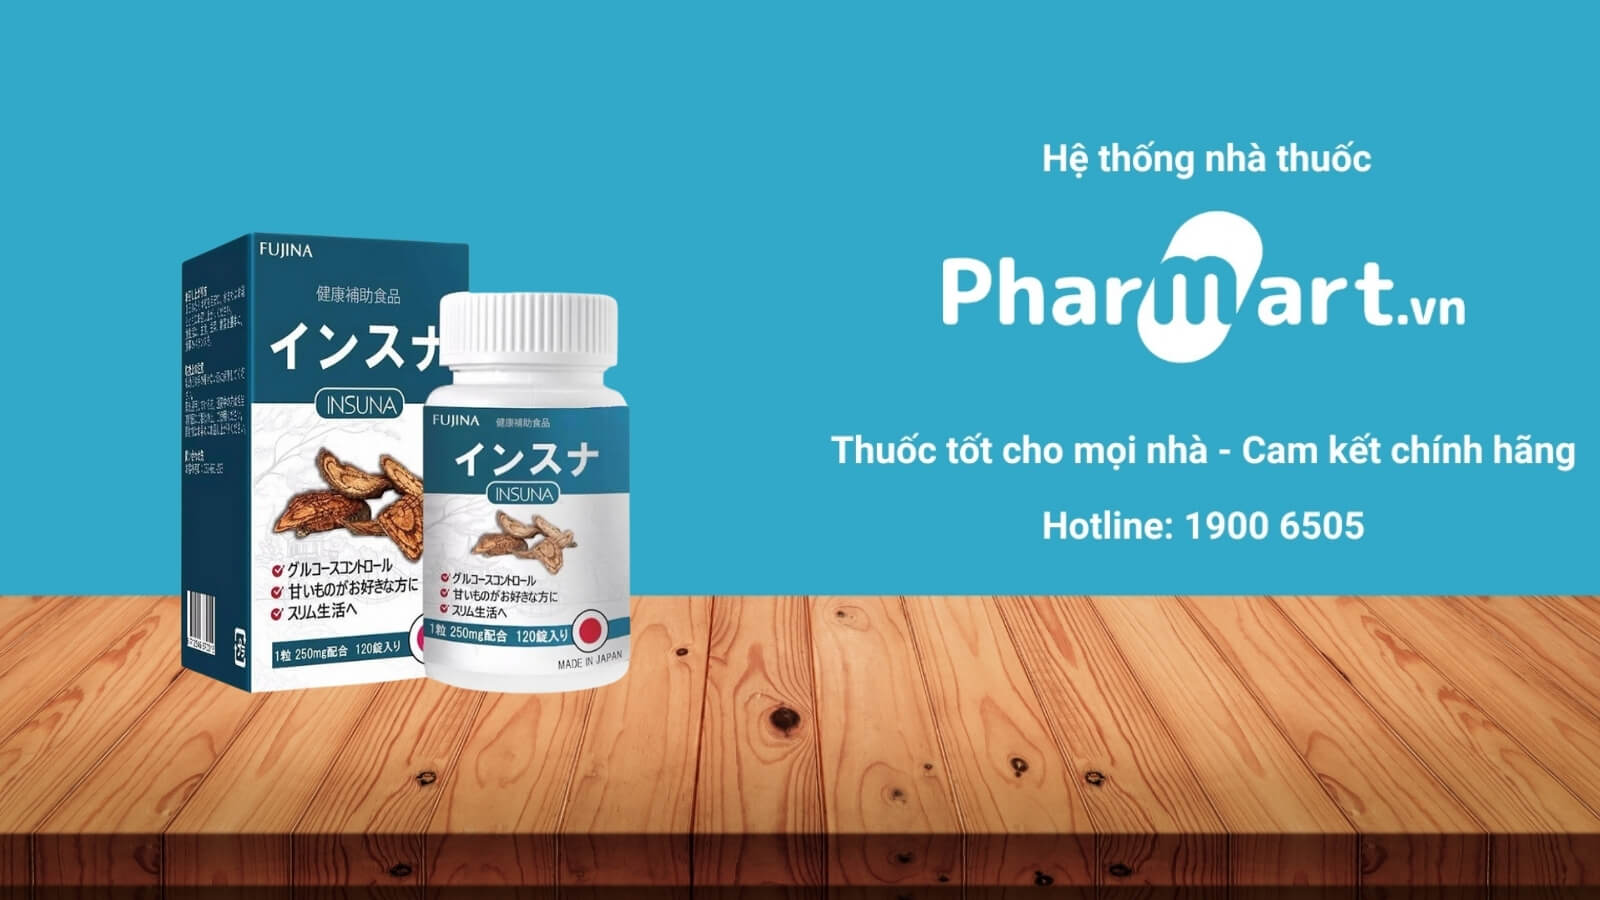 Mua Insuna Fujina chính hãng tại Pharmart.vn